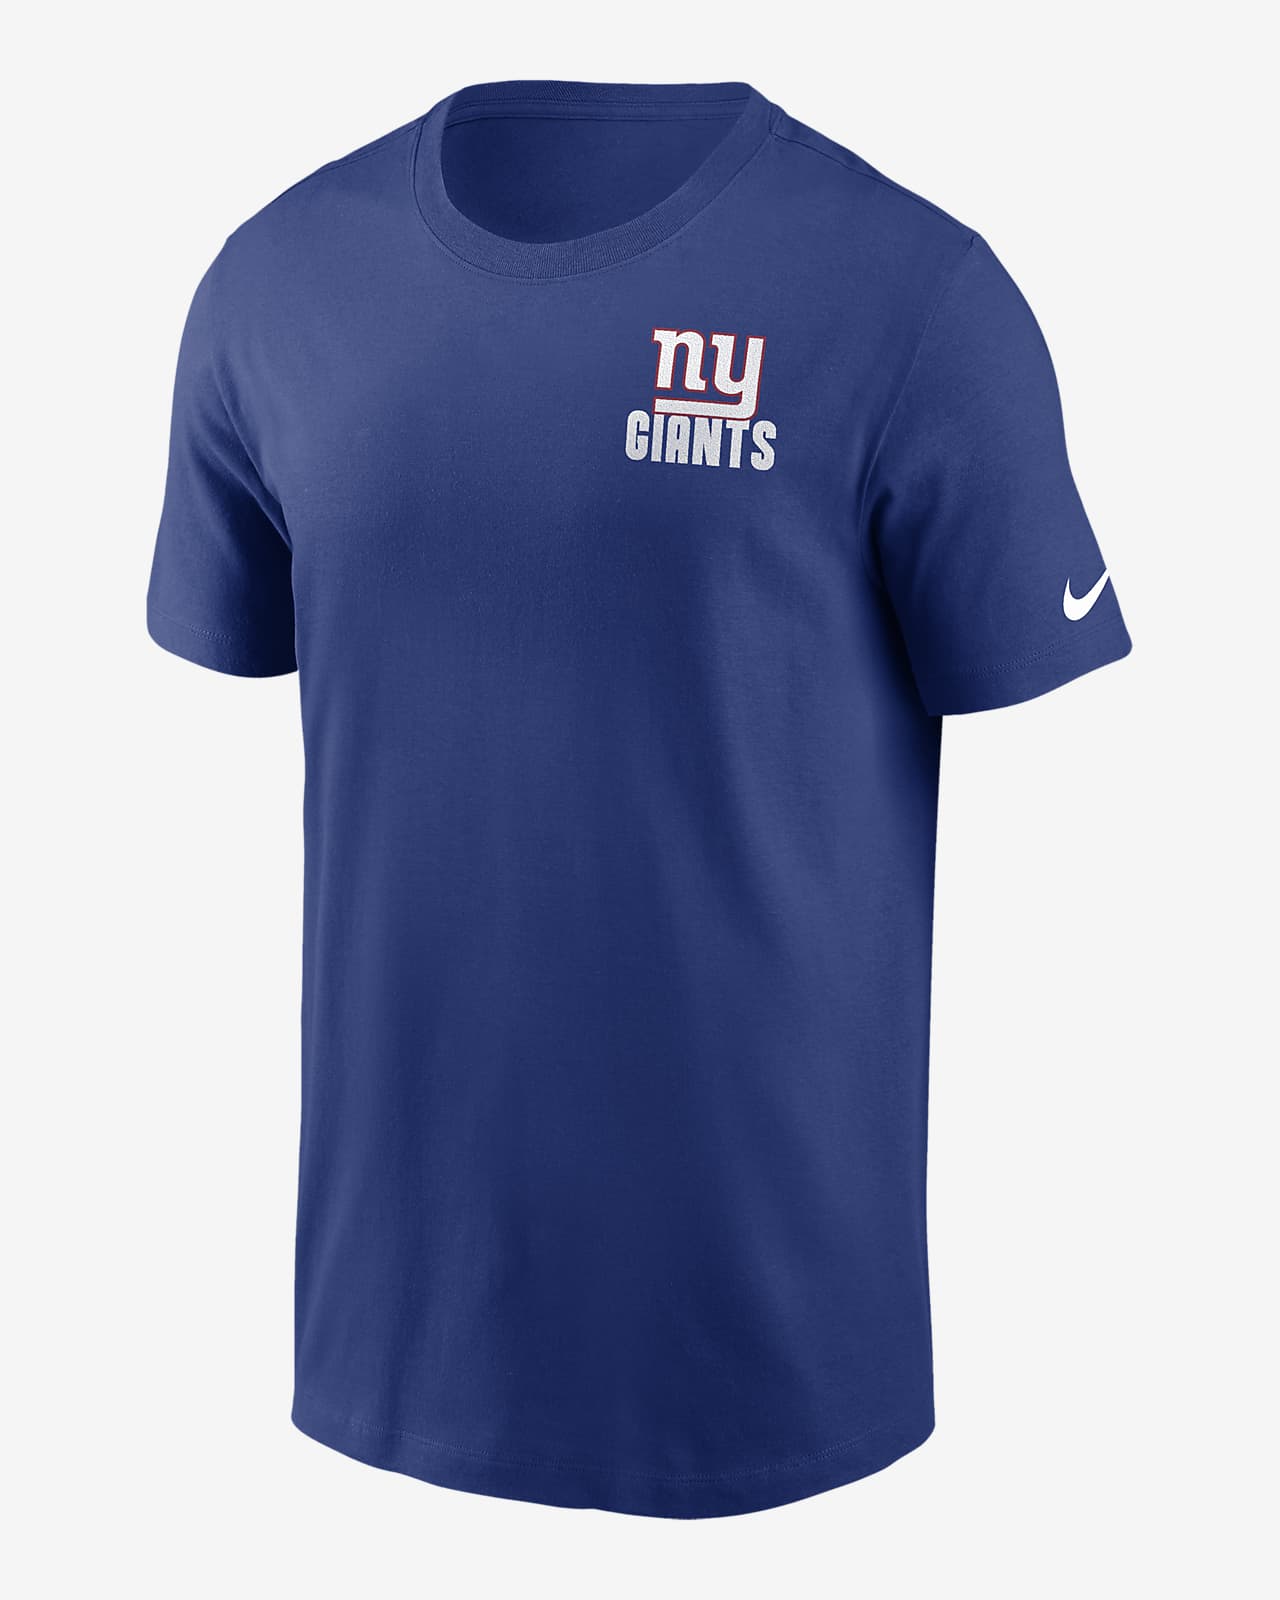 New York Giants Blitz Team Essential Men's Nike NFL T-Shirt